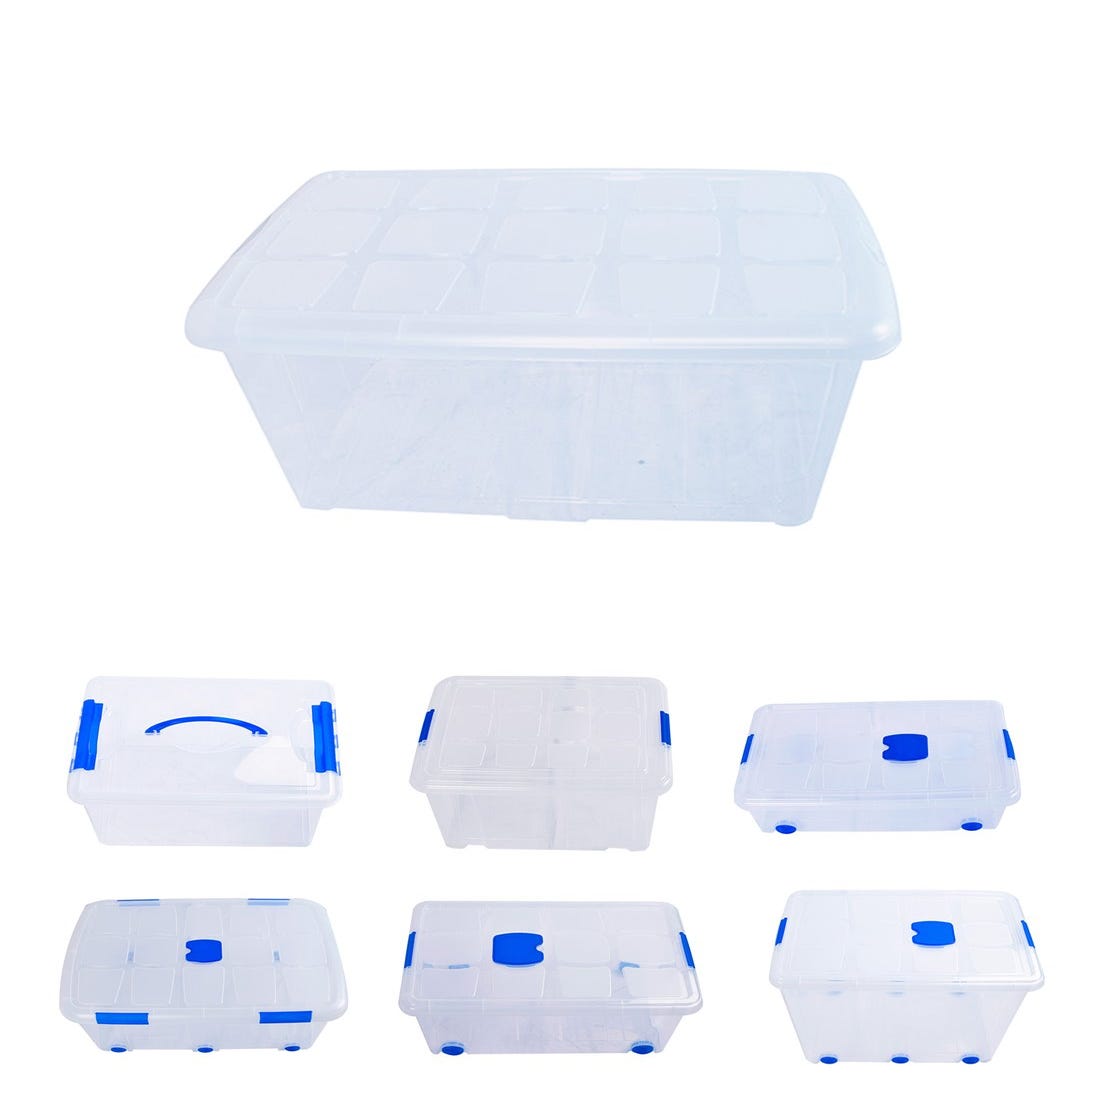 Cajas de Almacenaje Transparentes – Cajas Organizadoras de Plástico con  Tapa, Unidad (60L)